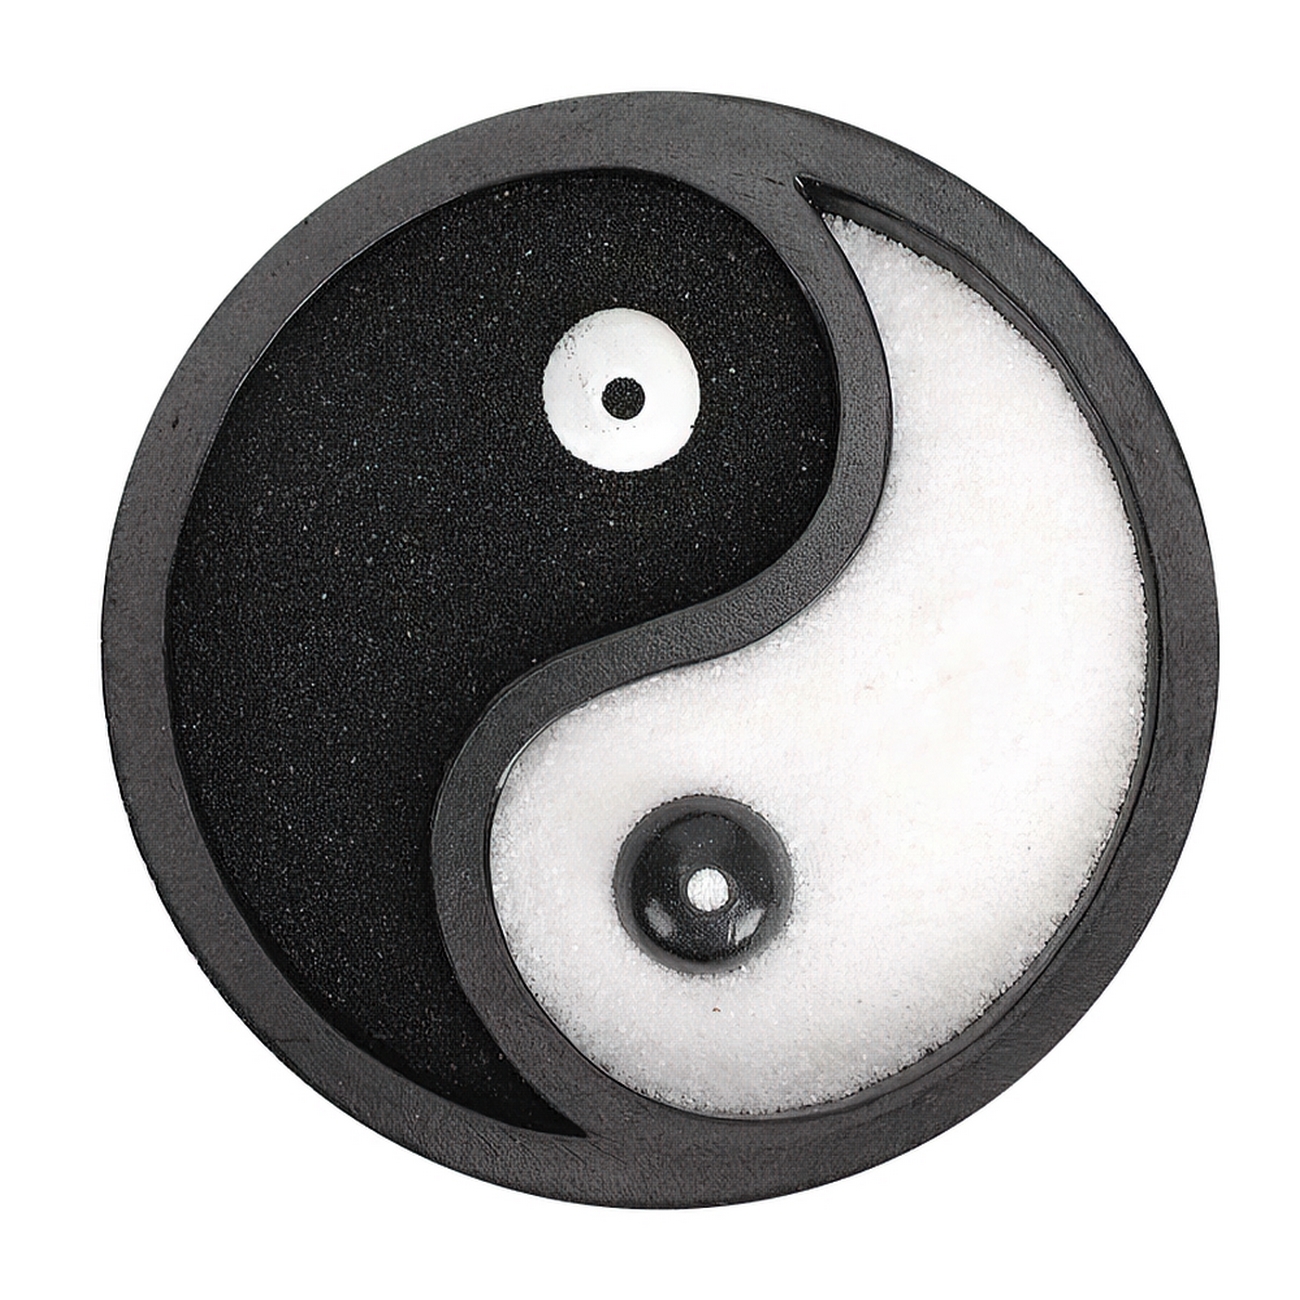 Yin Yang Jardin Zen Porta Incienso Equilibrio